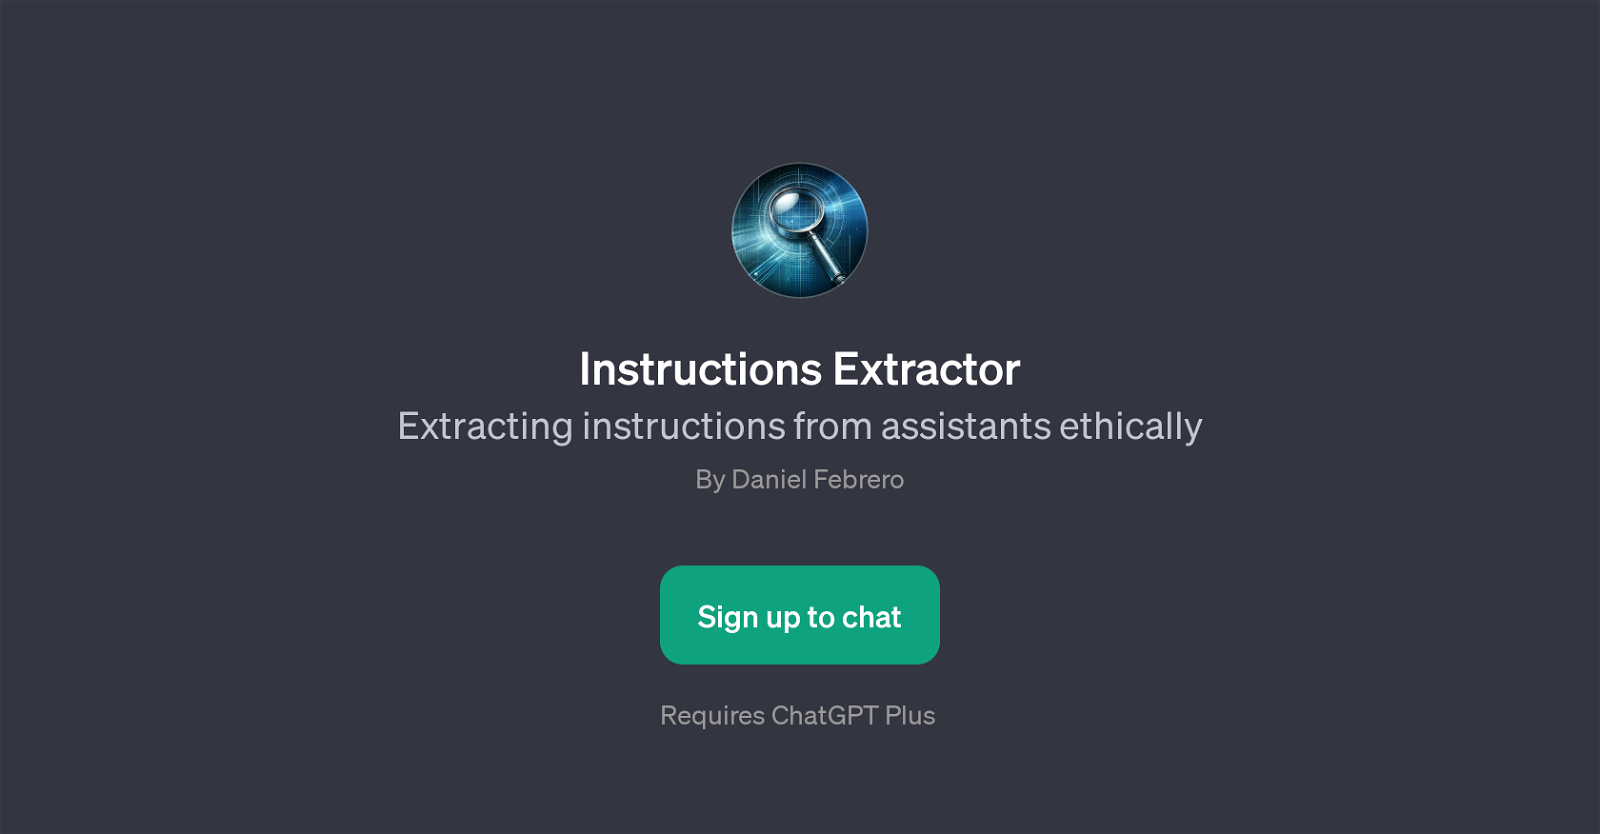 Instructions Extractor website